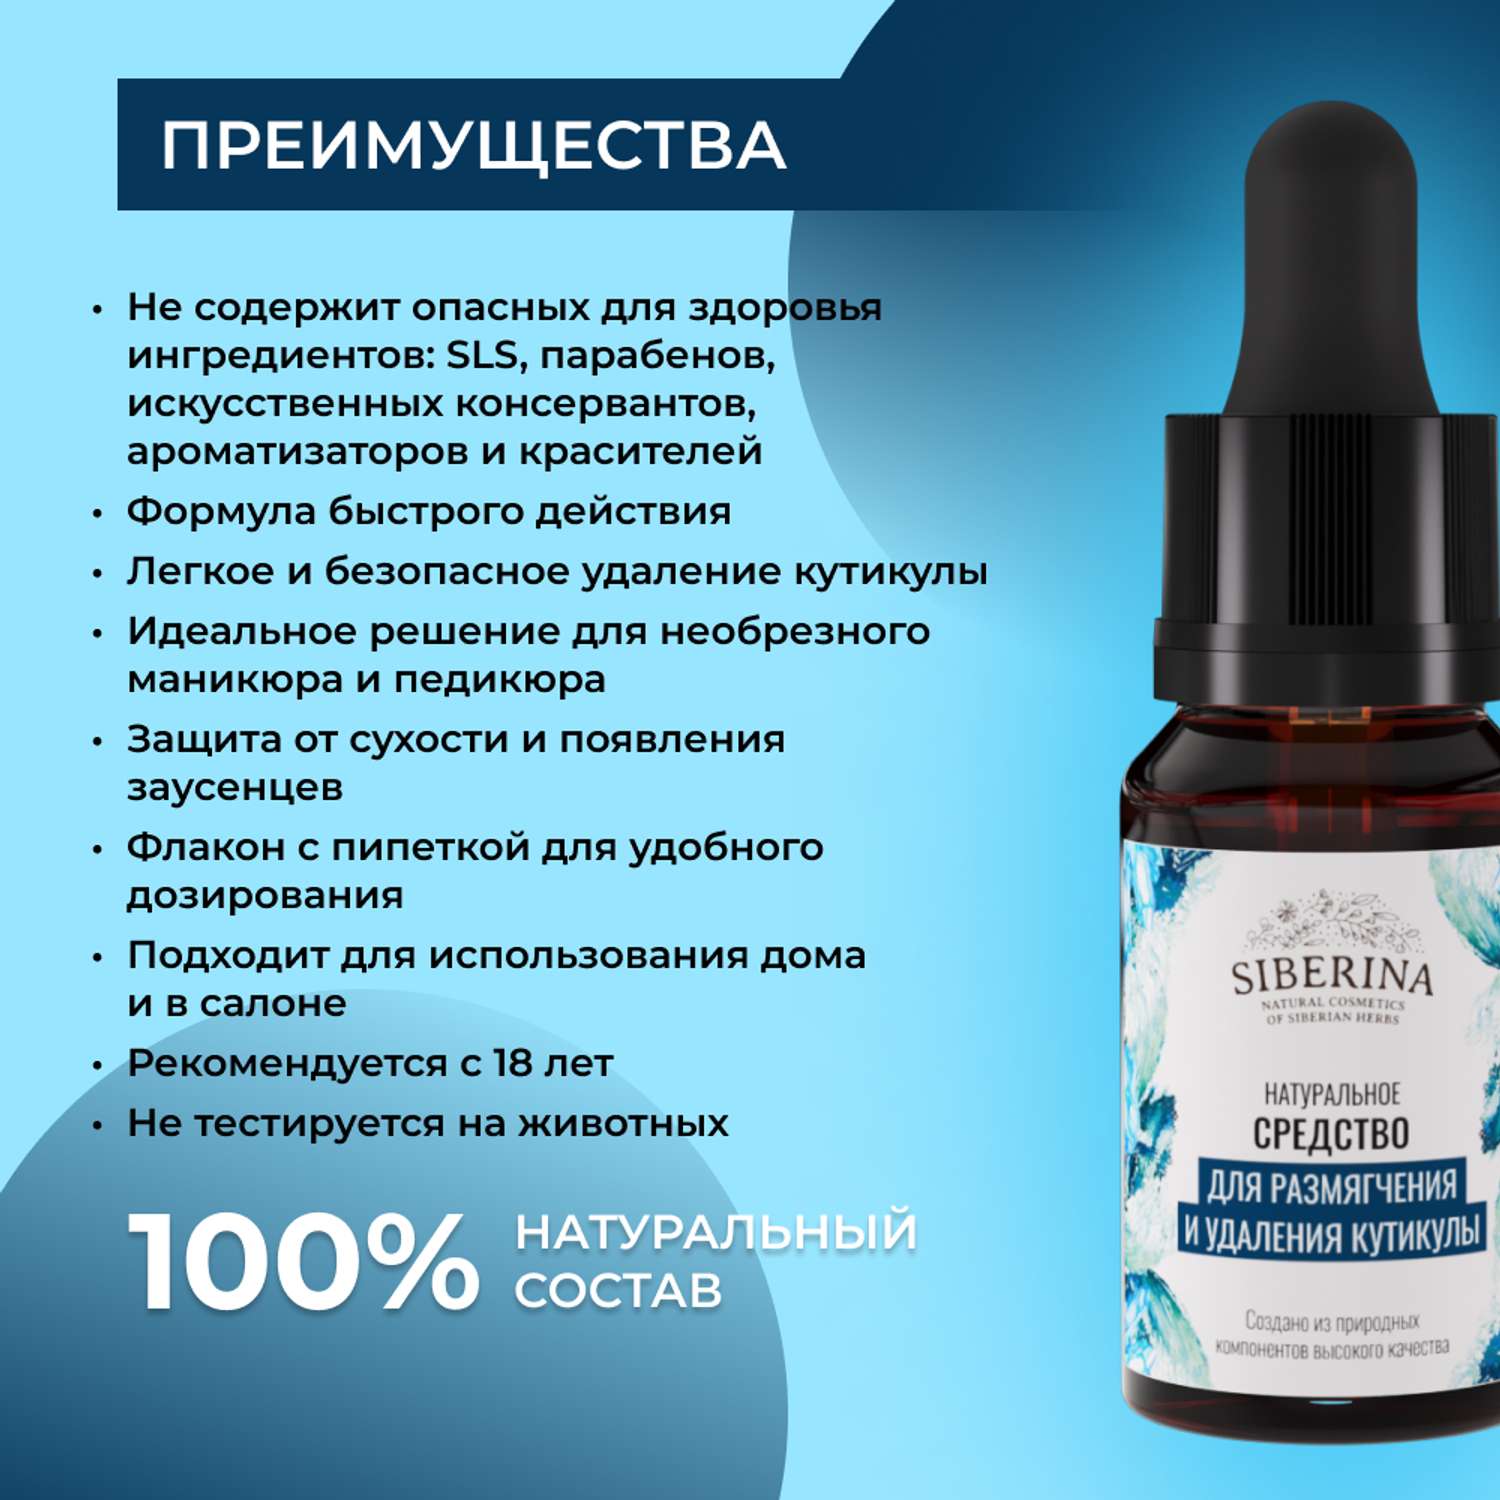 Средство Siberina натуральное «Для размягчения и удаления кутикулы» 10 мл - фото 3